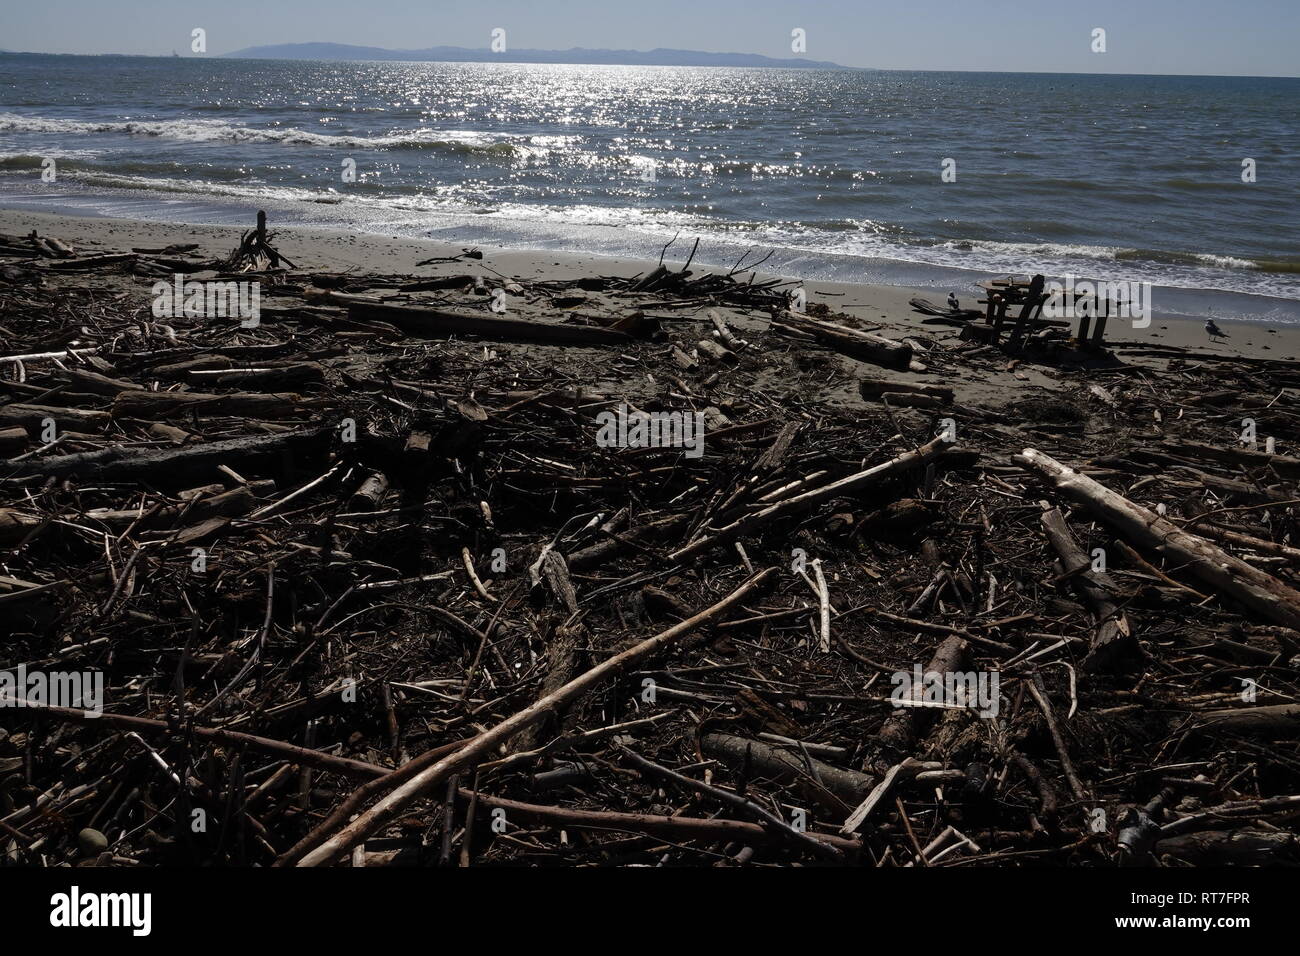 Capitola, California, Stati Uniti d'America 28 Febbraio 2019 - Driftwood e detriti vari lavato fino sulla spiaggia città dopo l'ampia tempeste che hanno colpito la California questa settimana. Credito: Motofoto/Alamy Live News Foto Stock